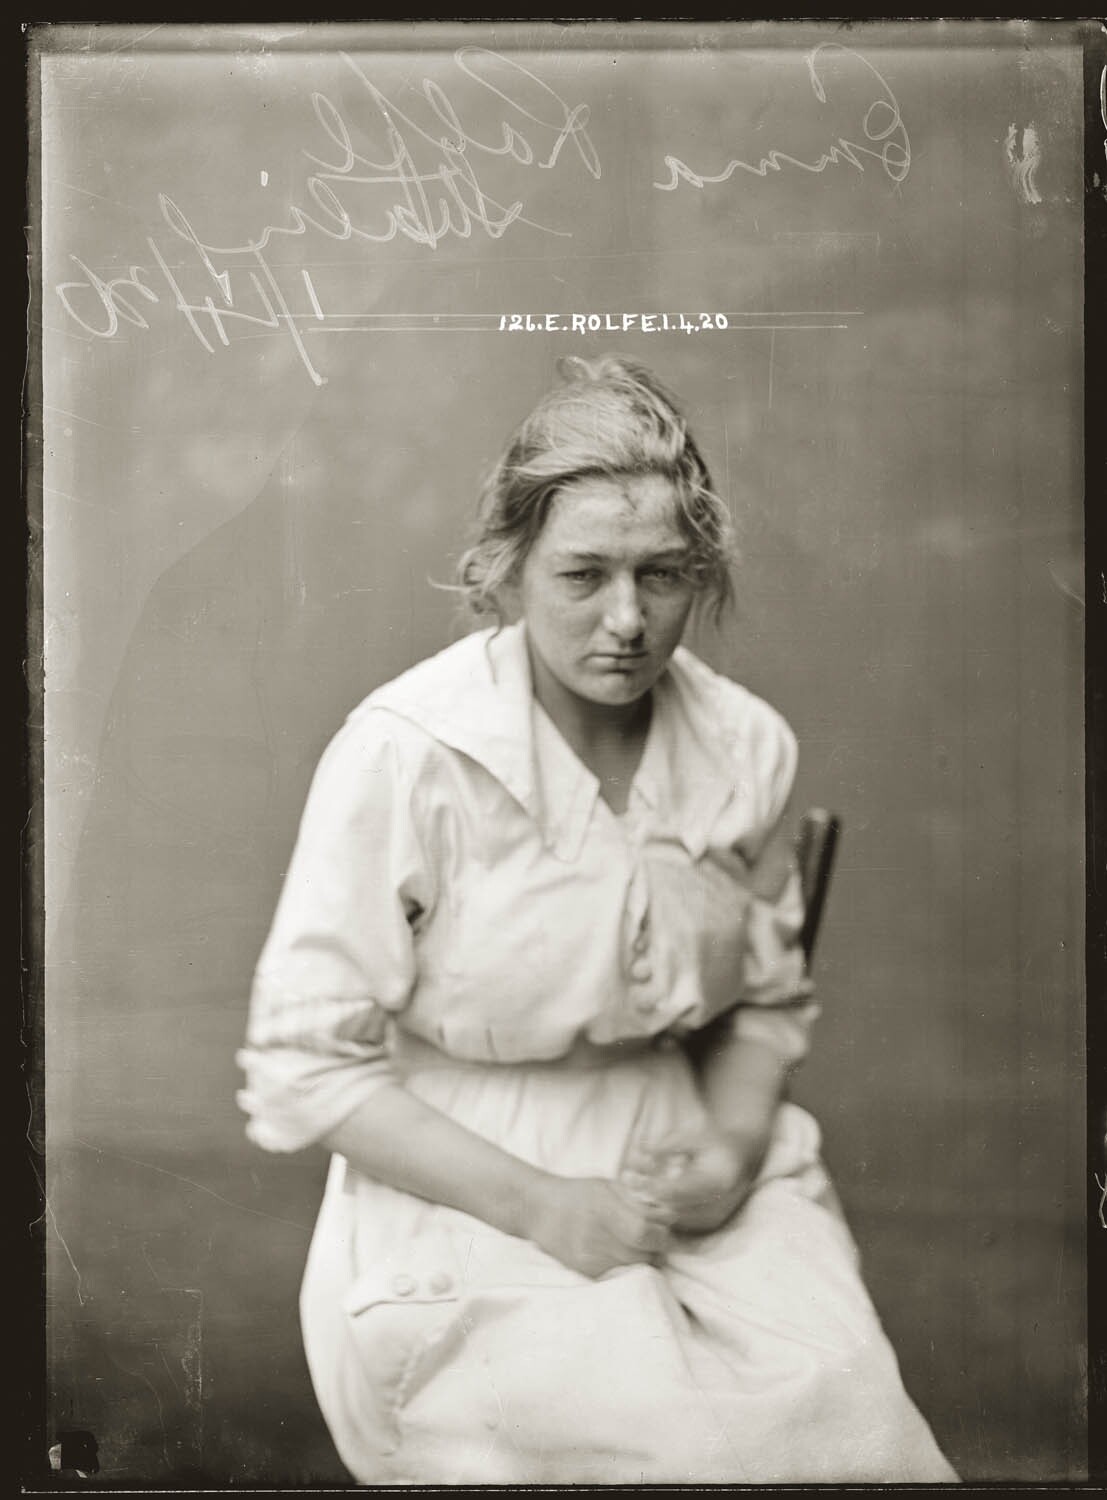 Эмма Рольф, воровала ценные меха и шелка из городских универмагов, 1920 год. Архив судебной фотографии полиции Нового Южного Уэльса